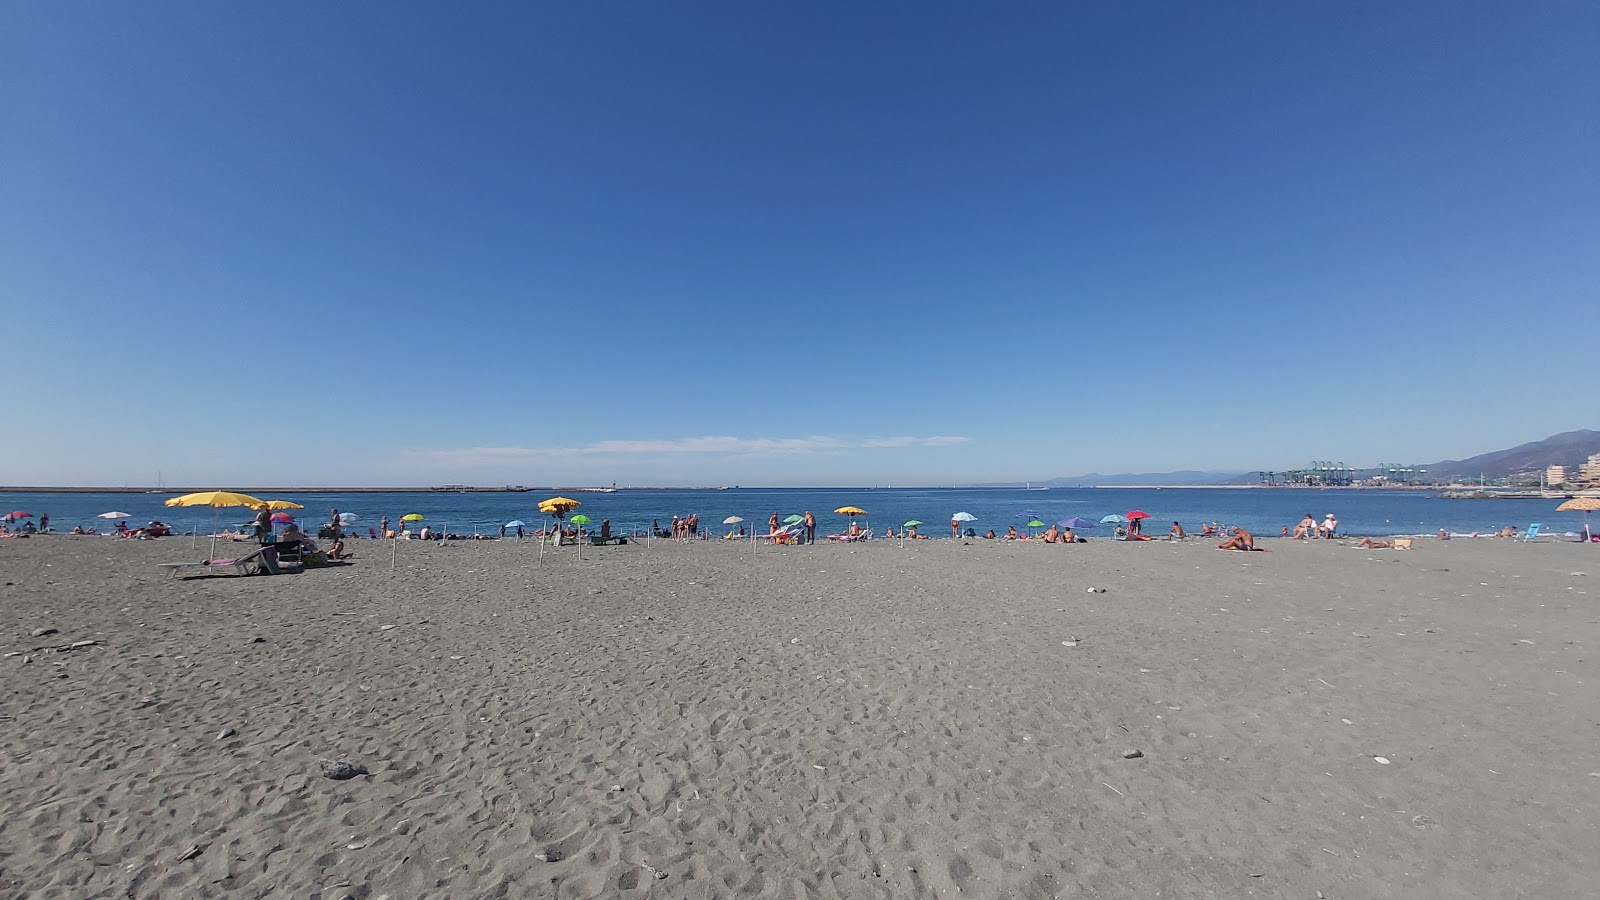 Foto von Spiaggia Multedo mit kleine bucht